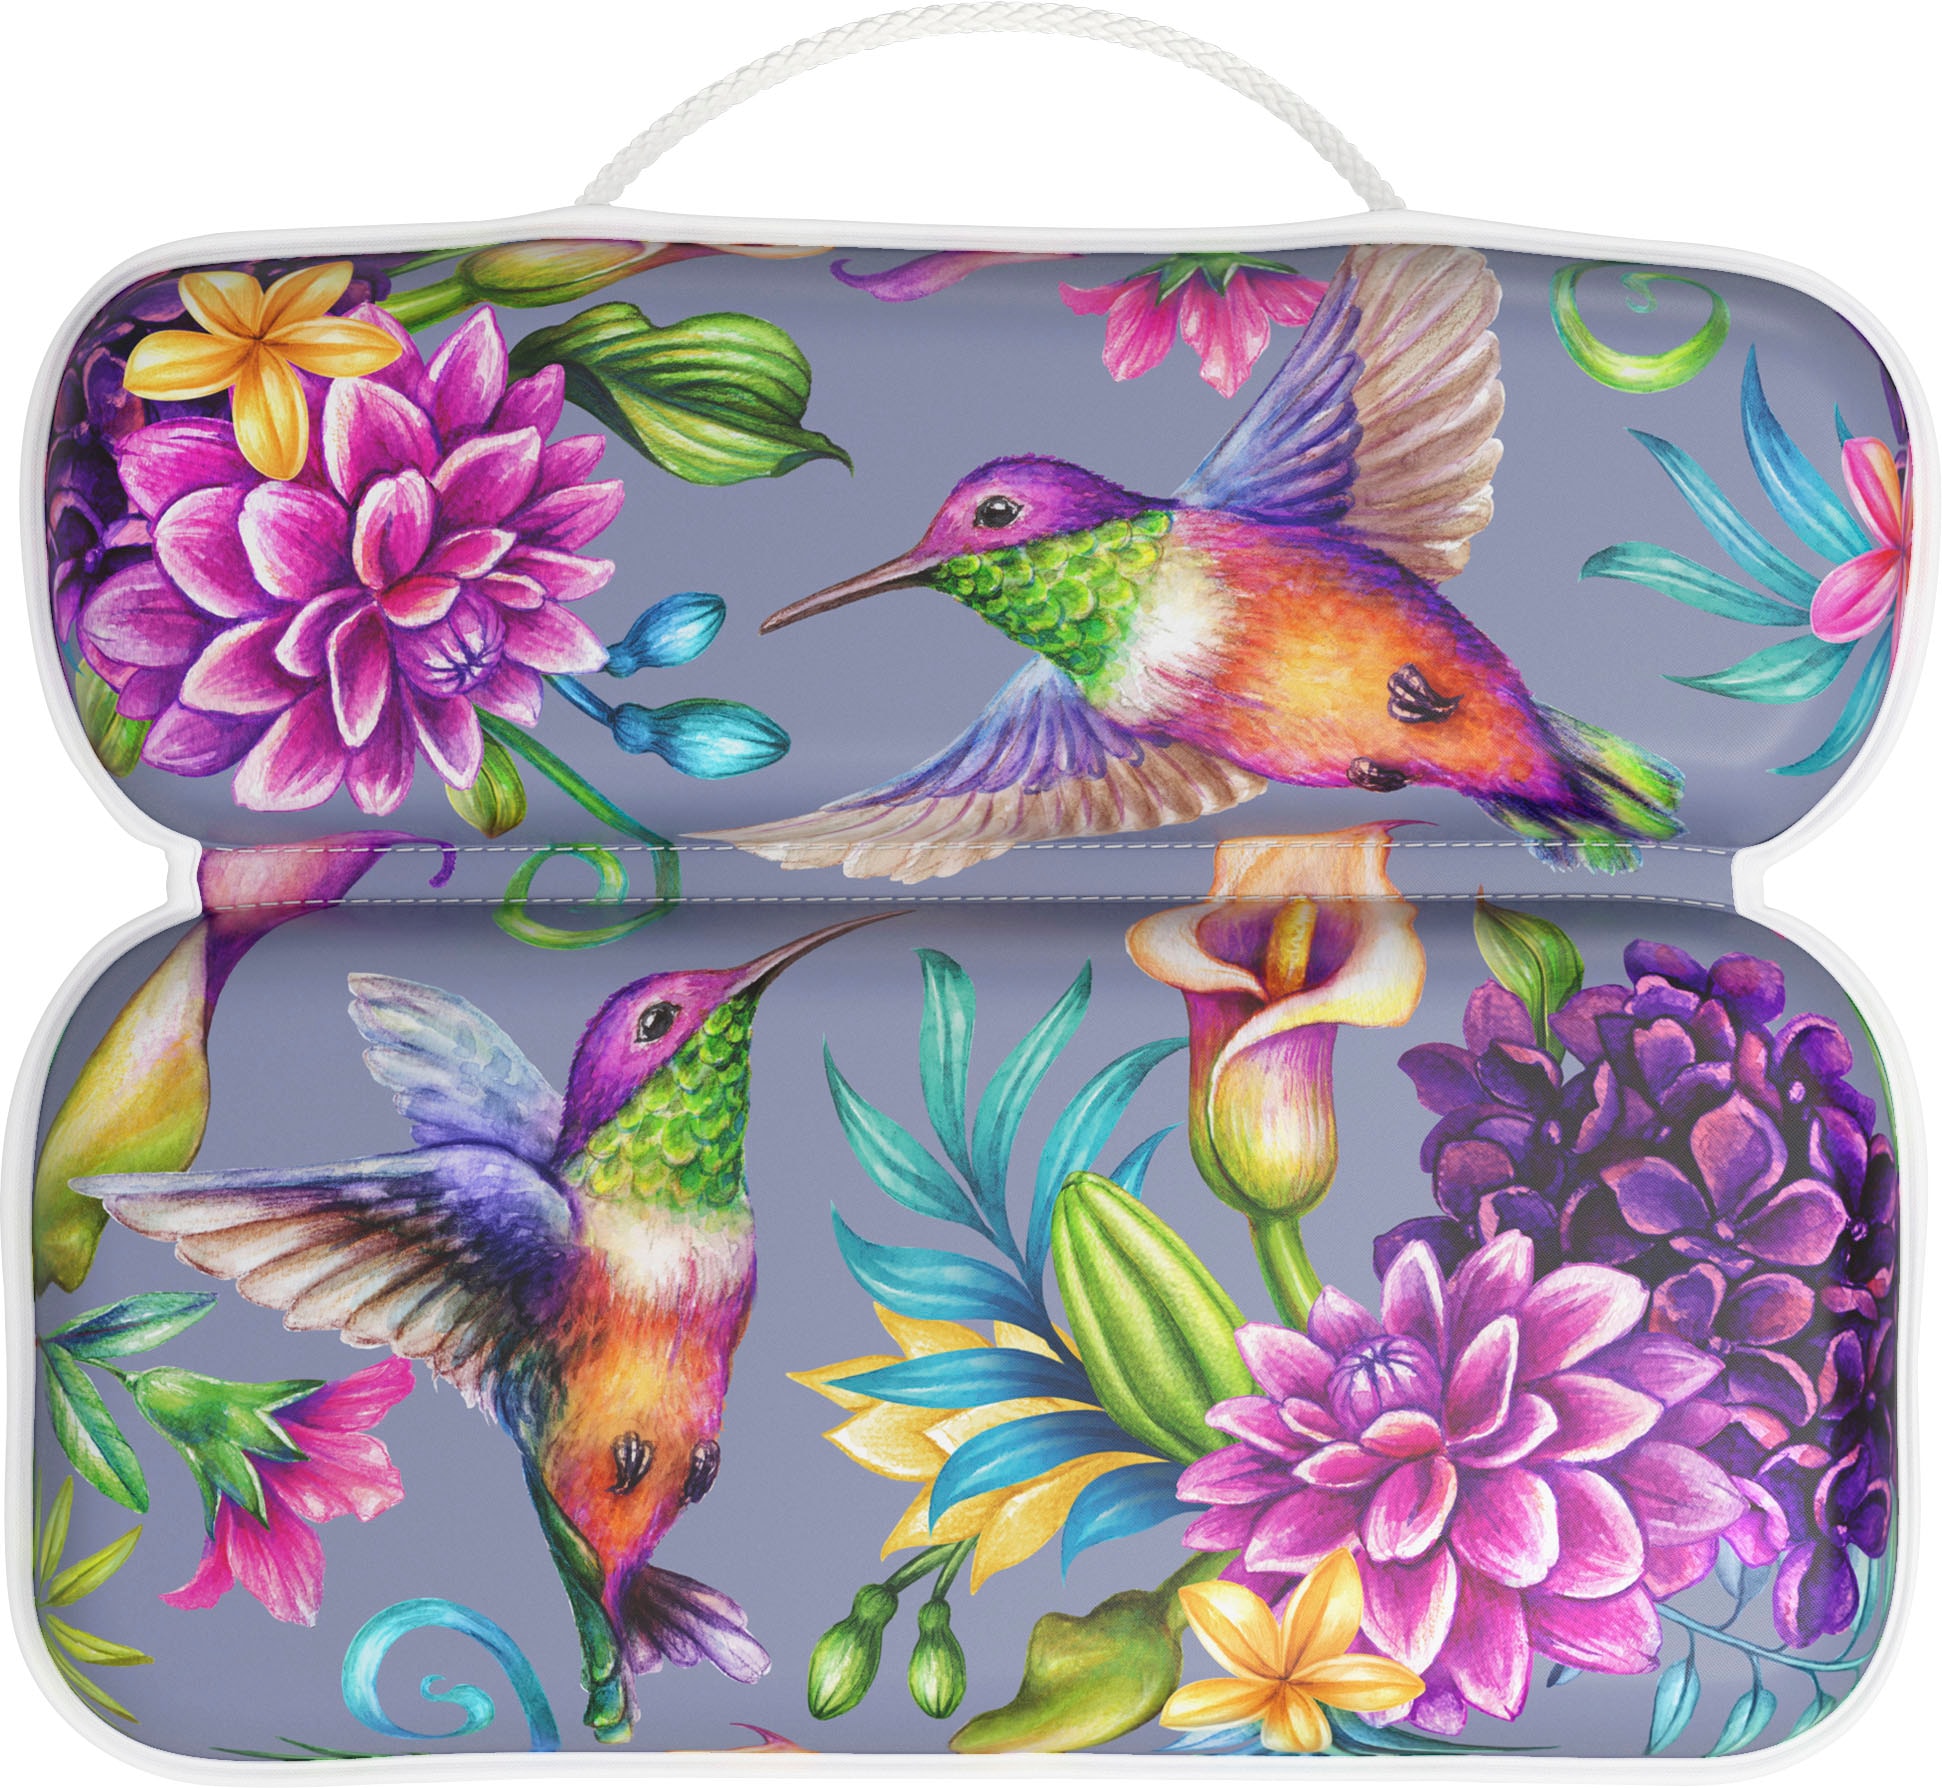 Sanilo Nackenkissen »Badewannenkissen Kolibri«, bequem, rutschfest, kräftige Farben, mit 7 starken Saugnäpfen